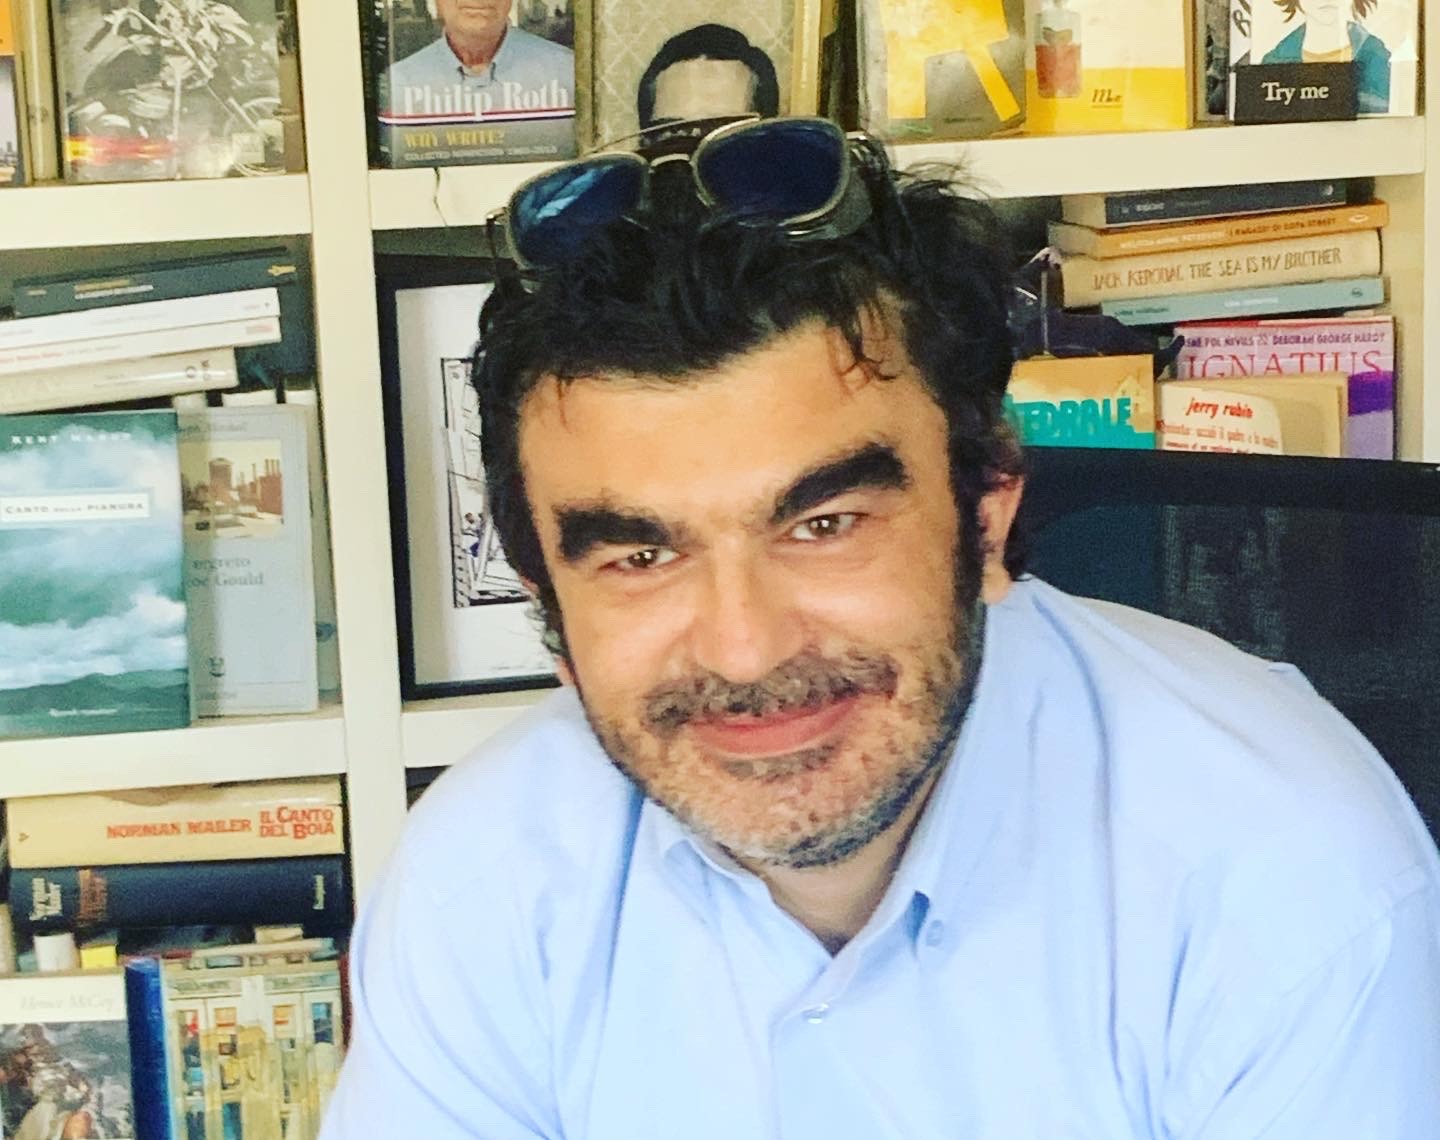 Gian Paolo Serino e Satisfiction: 20 anni di critica letteraria senza compromessi